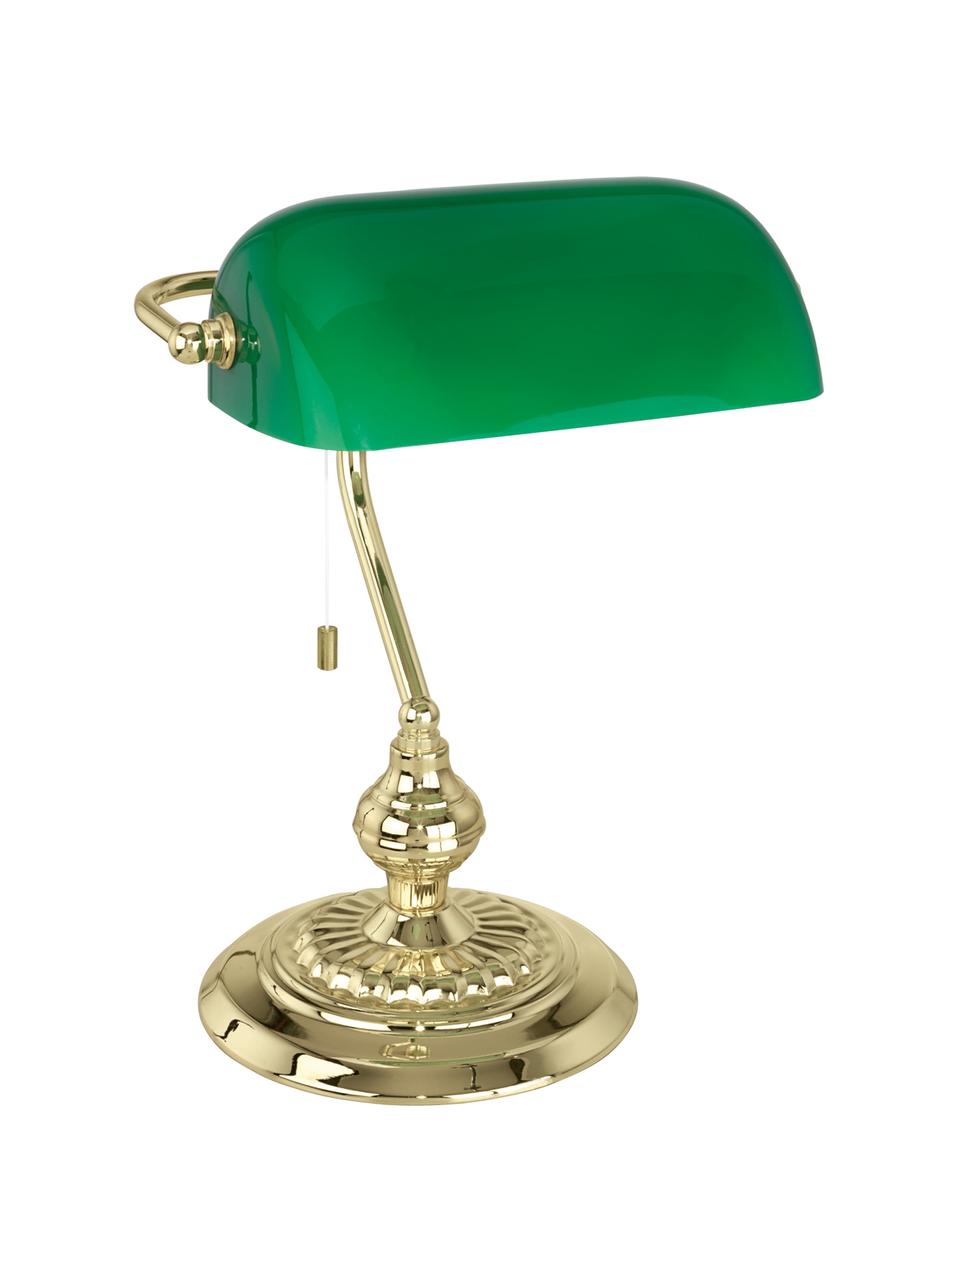 Schreibtischlampe Banker, Lampenschirm: Glas, Lampenfuß: Stahl, beschichtet, Grün, Goldfarben, 25 x 39 cm